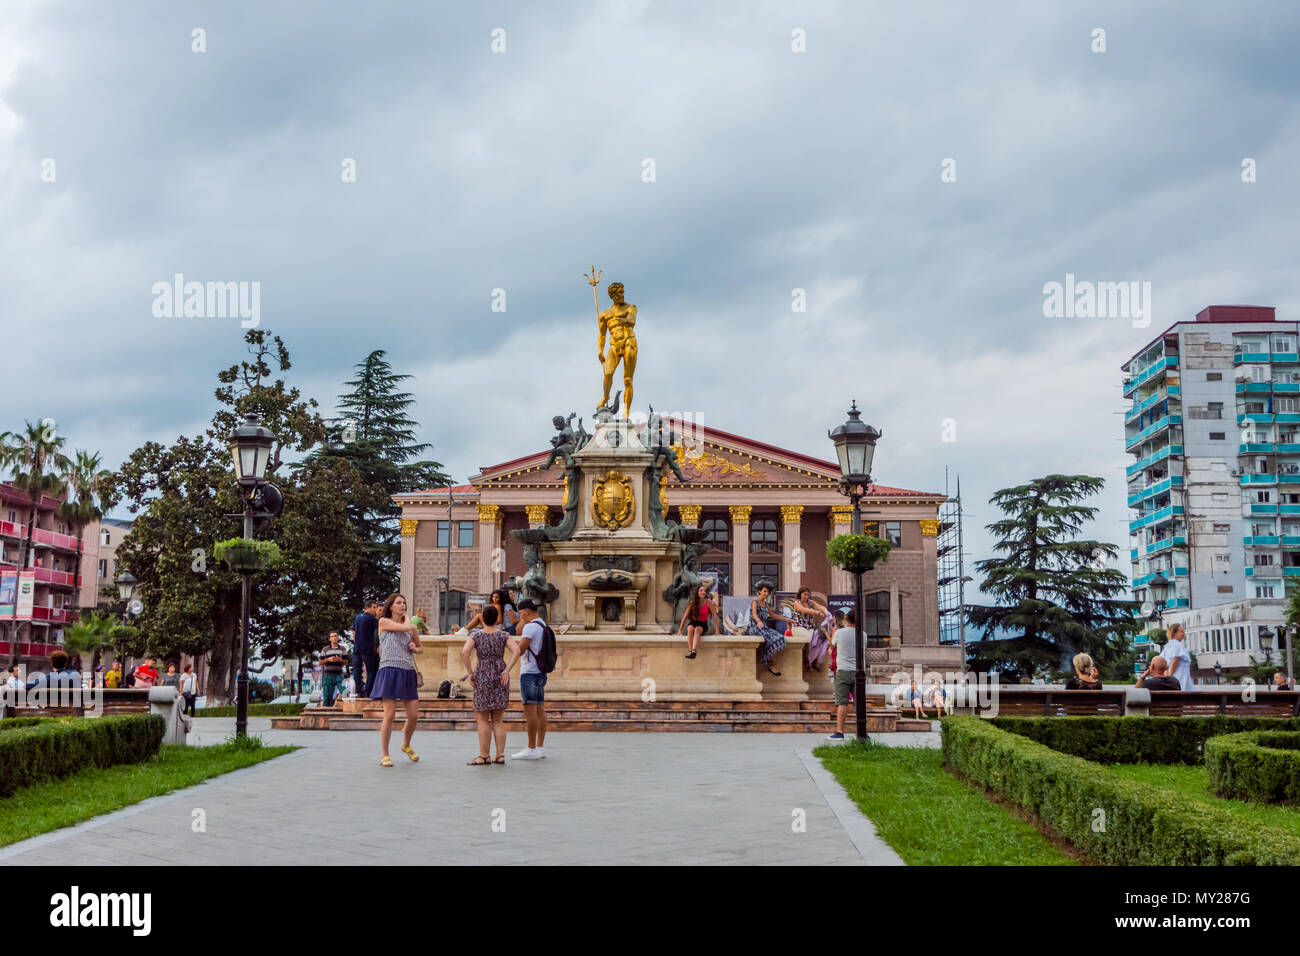 Batumi, Georgien - 25. August 2017: 6 Personen genießen Sie die später Nachmittag in Europa Platz vor der Statue von Medea in der Innenstadt Stockfoto